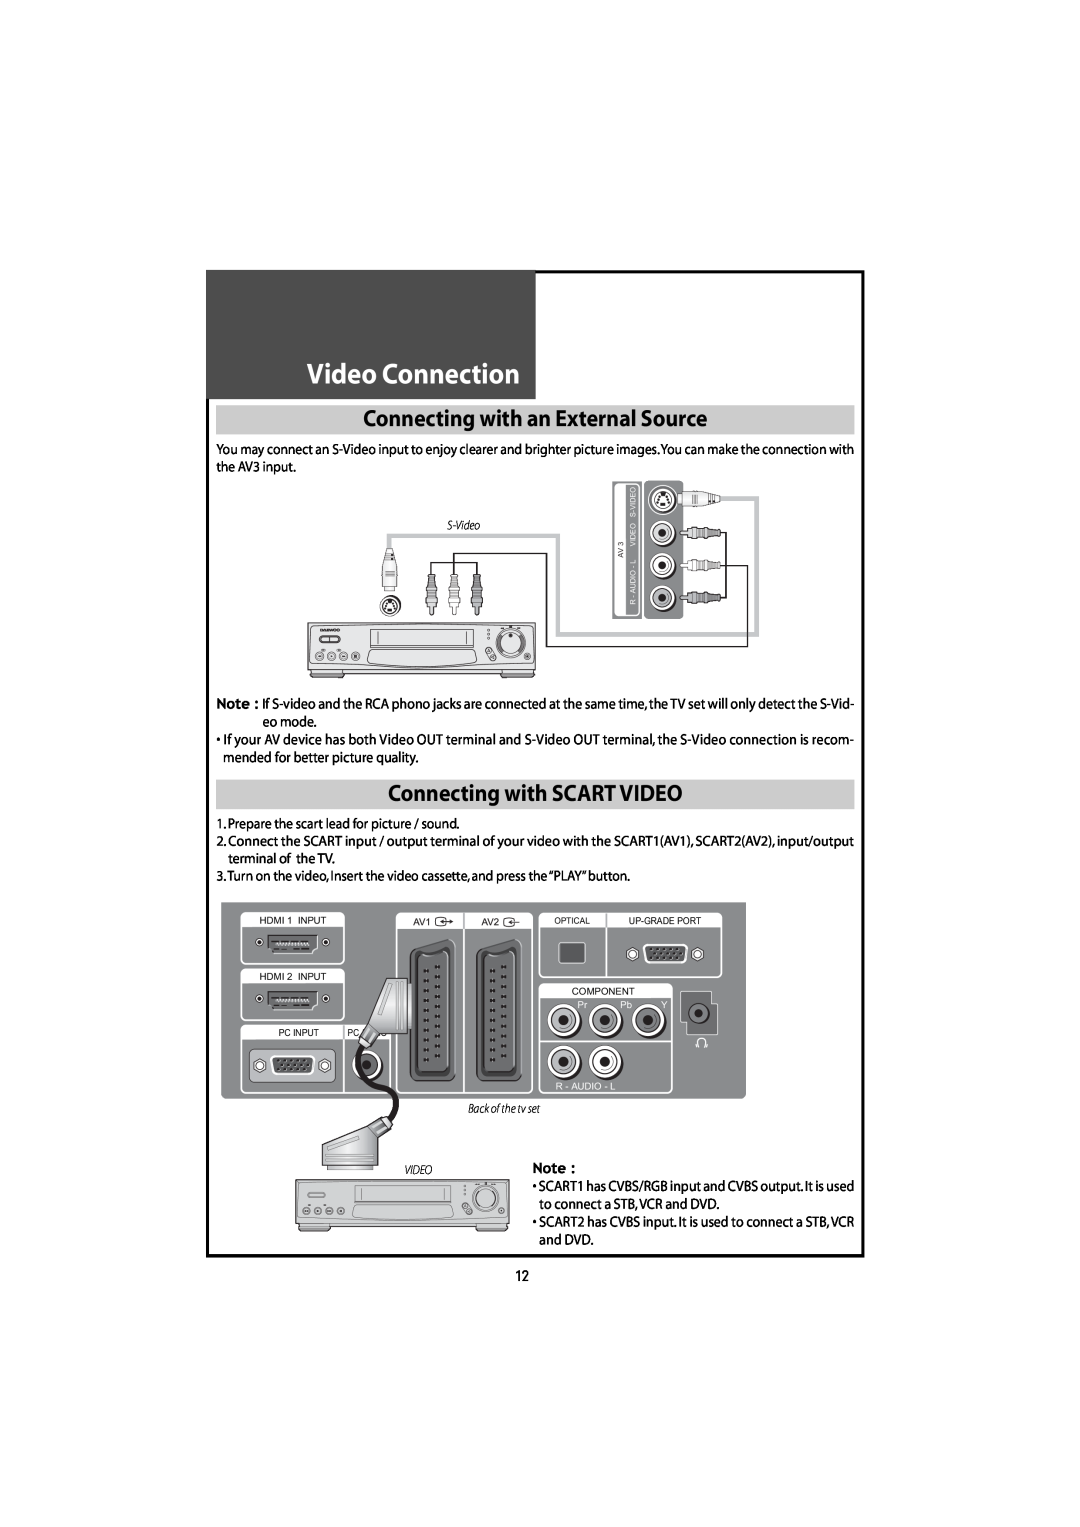 Daewoo DLT-42U1/G1FH, DLT-46U1FH Video Connection, Connecting with an External Source, Connecting with SCARTVIDEO 